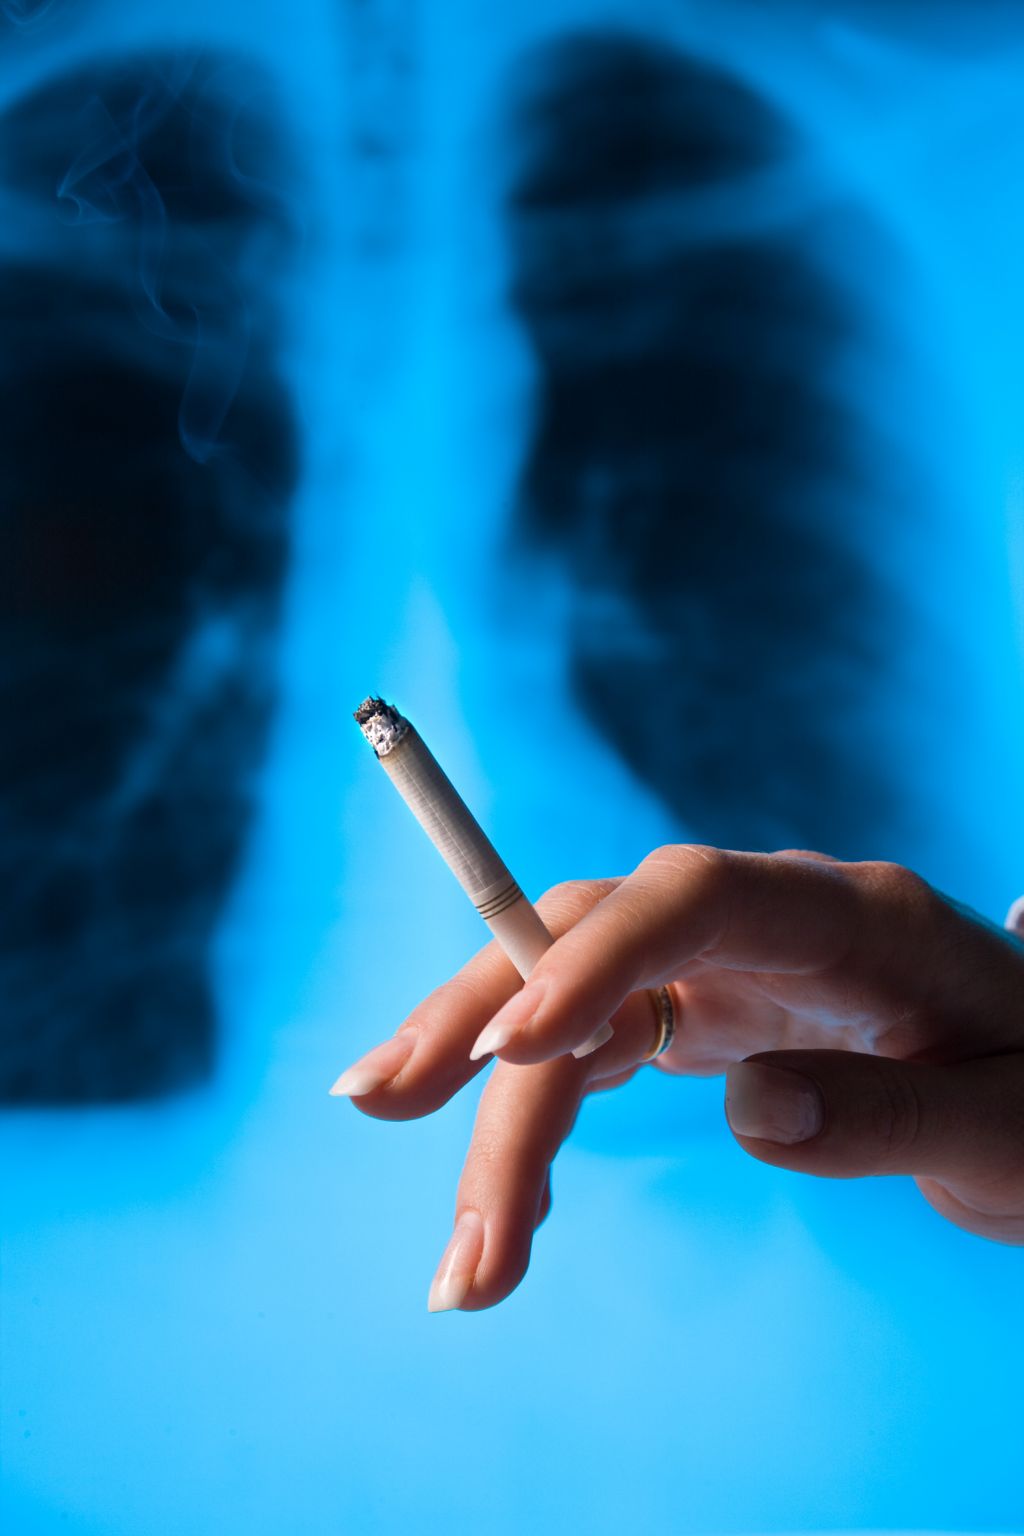 Le tabagisme a des conséquences graves sur la santé, en particulier sur les fonctions respiratoires.